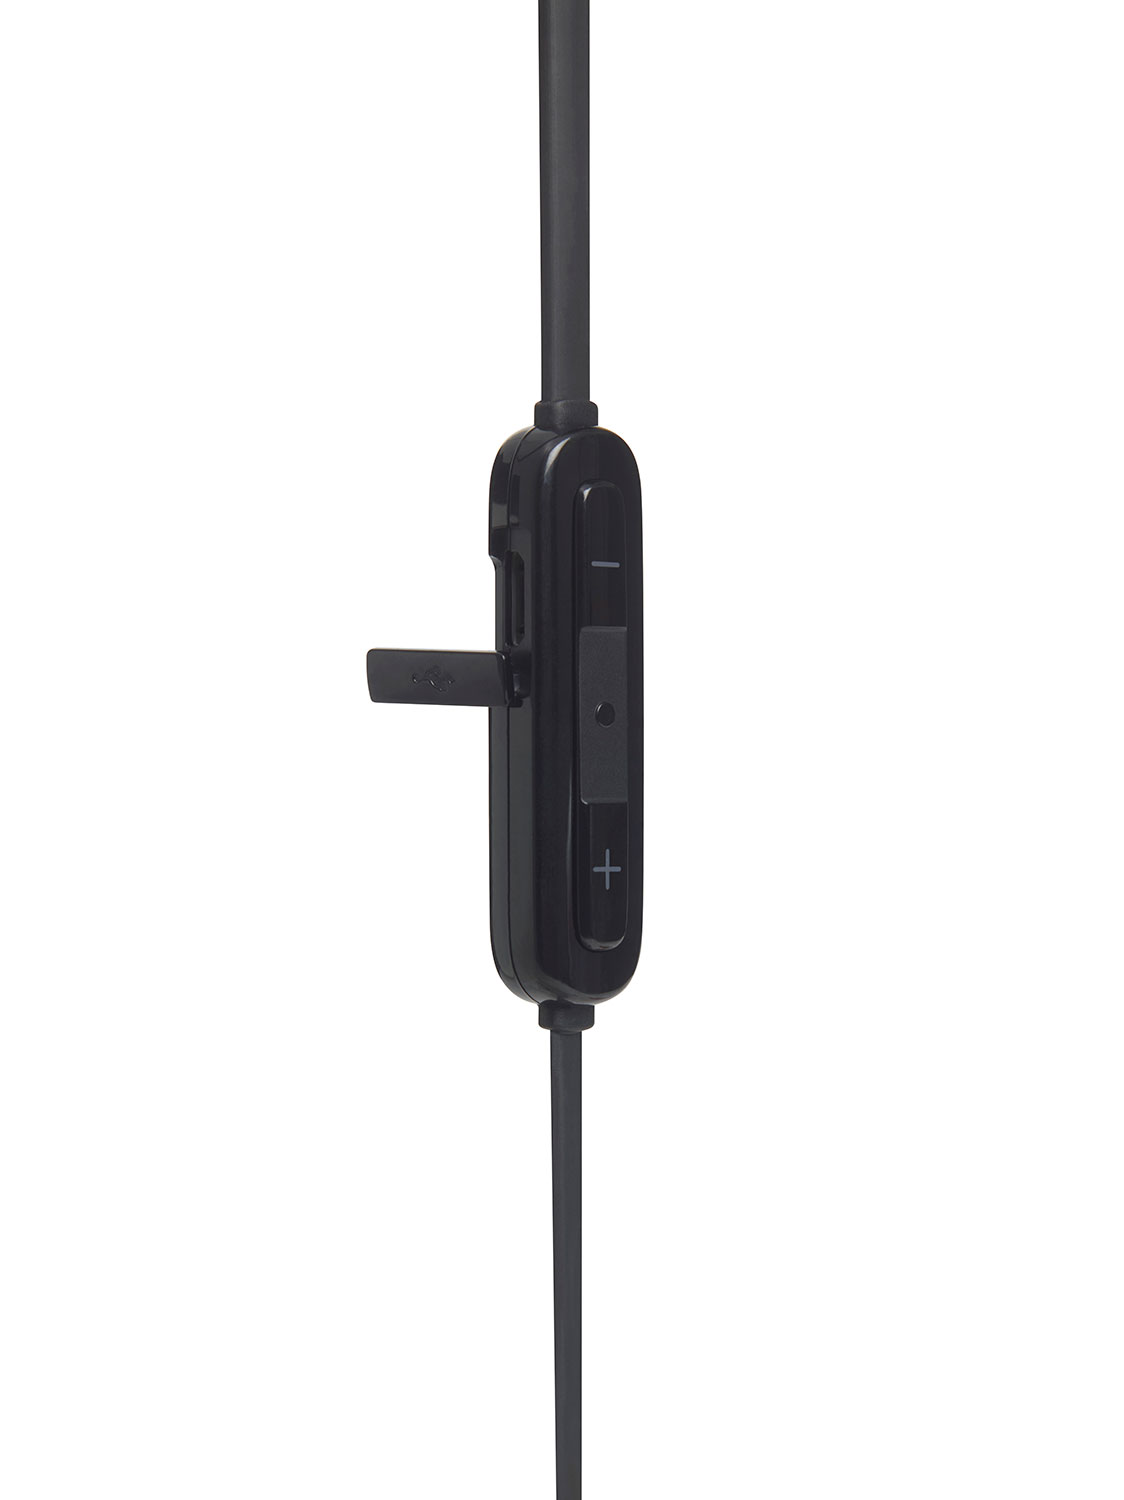 JBL T110BT In Ear Bluetooth Headset black